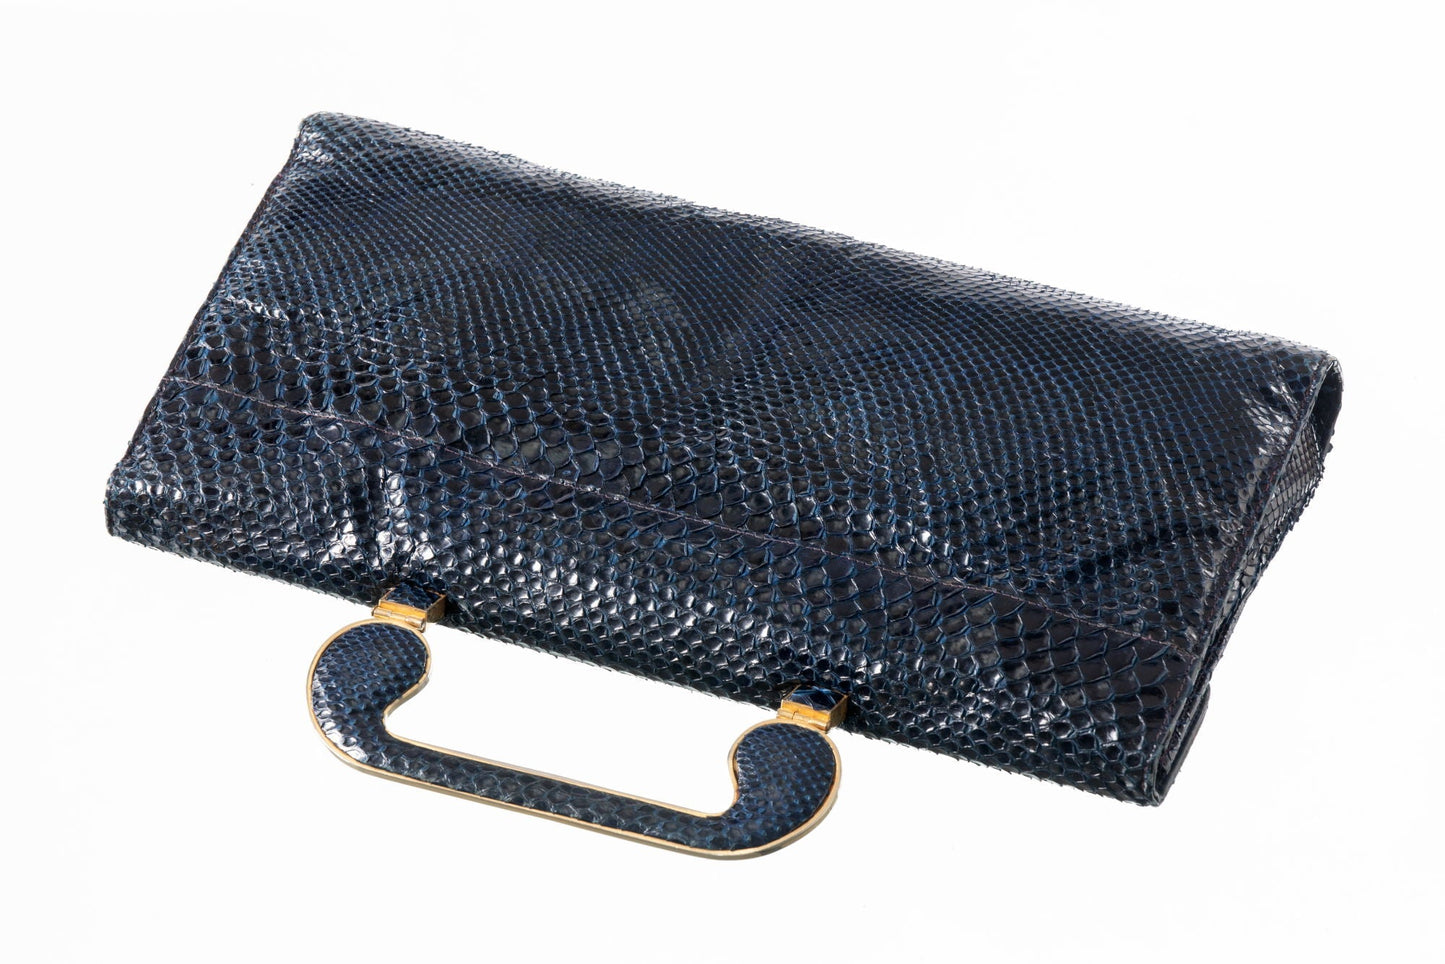 1950s blue python handbag